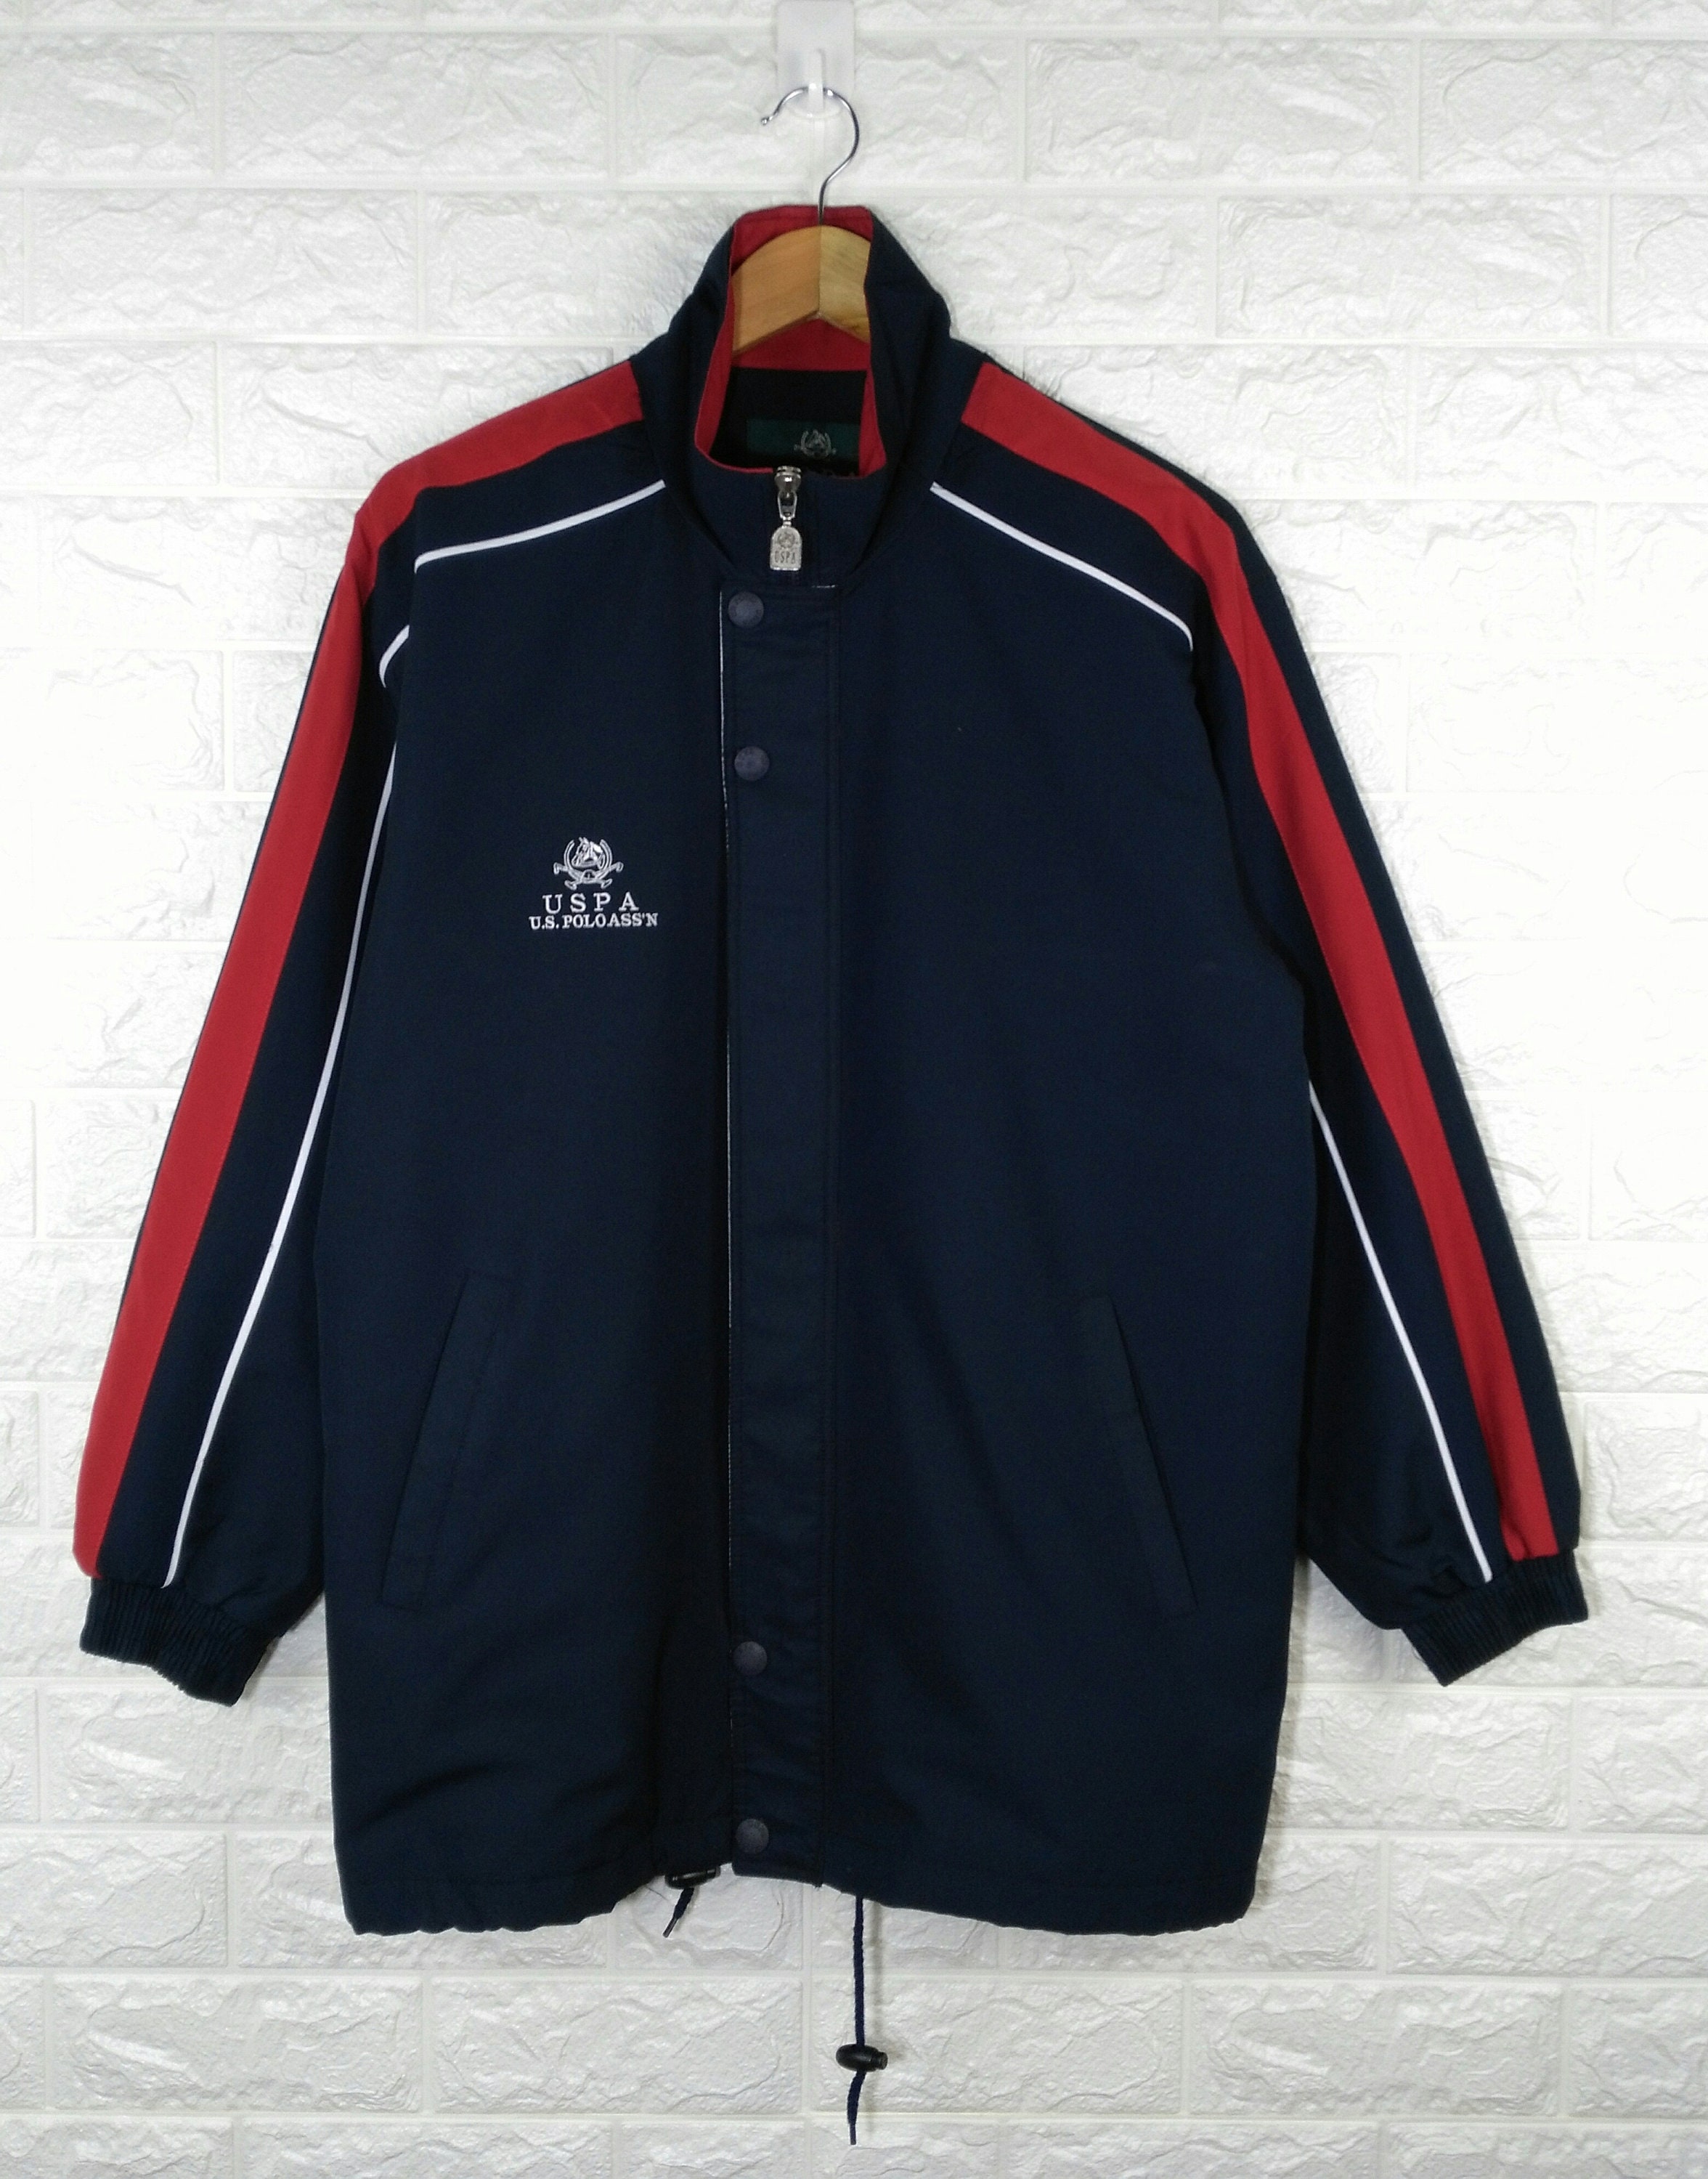 Vintage USPA Jacket Vintage 90's Us Polo Association | Etsy